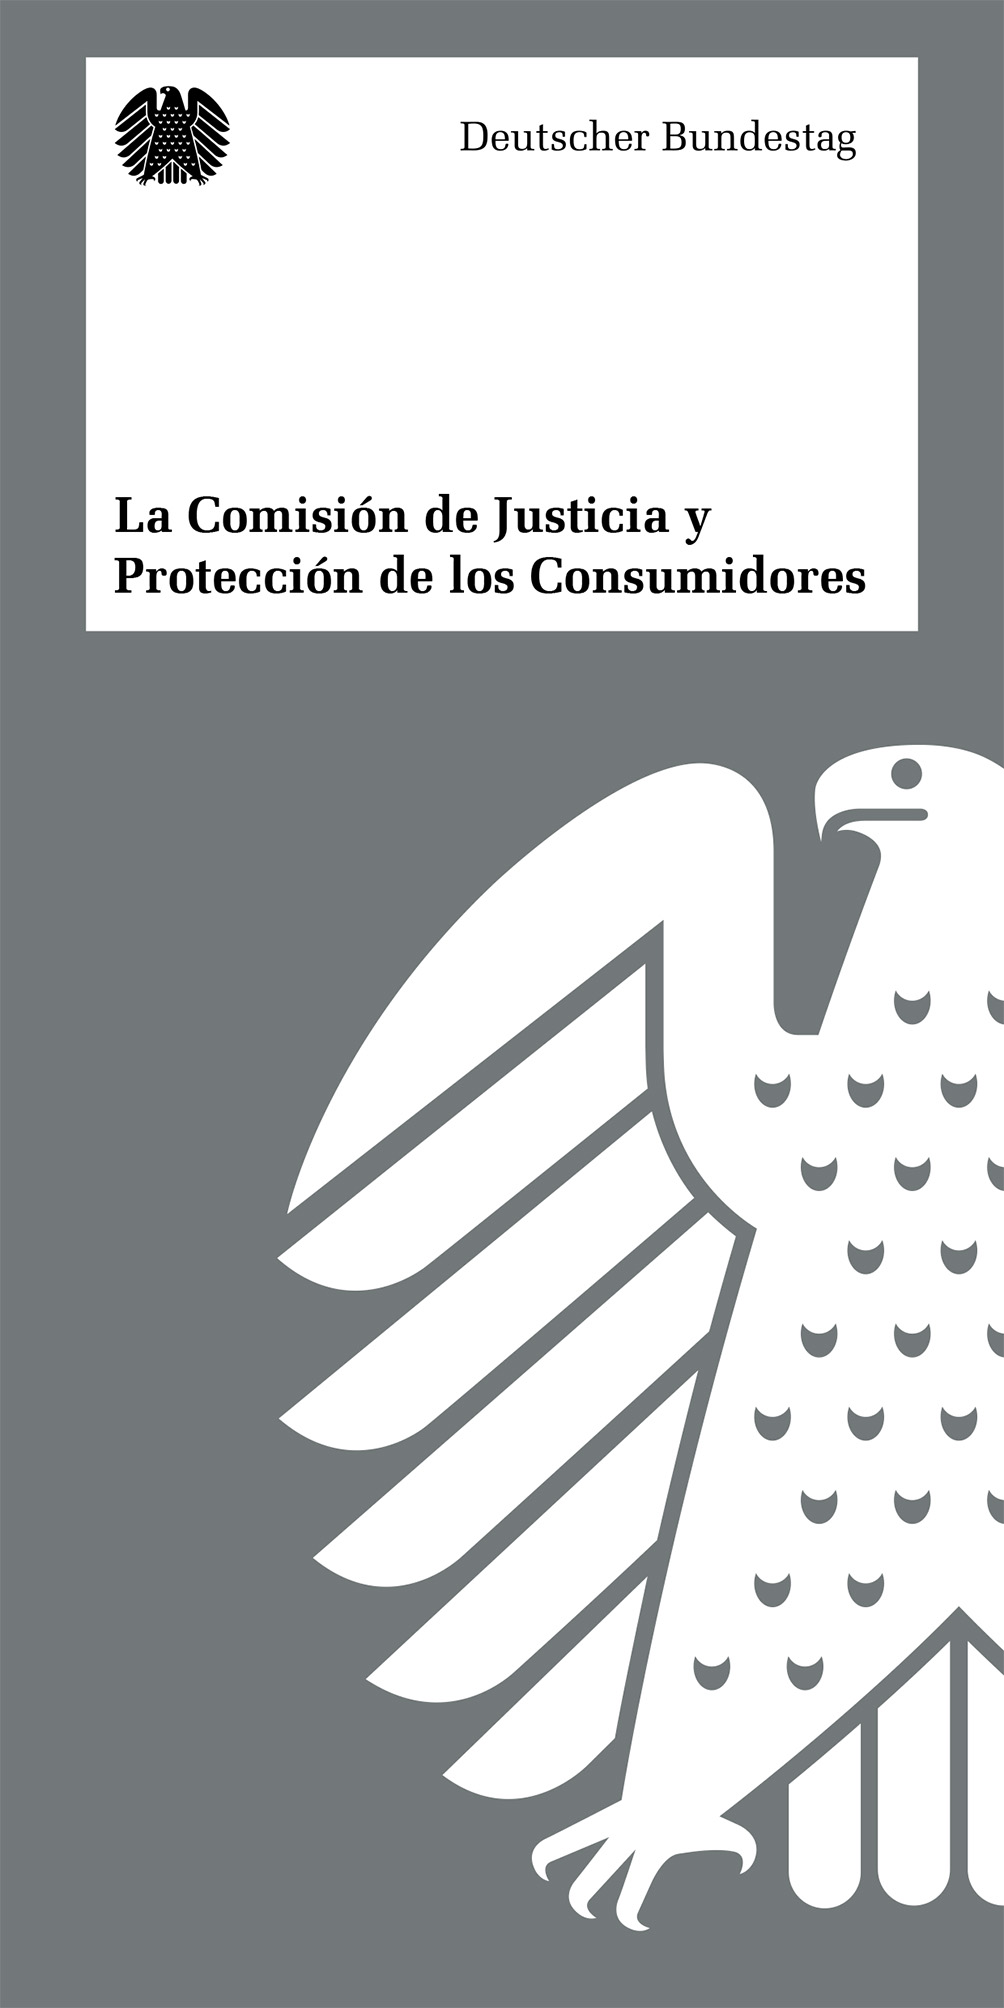 La Comisión de Justicia y Protección de los Consumidores